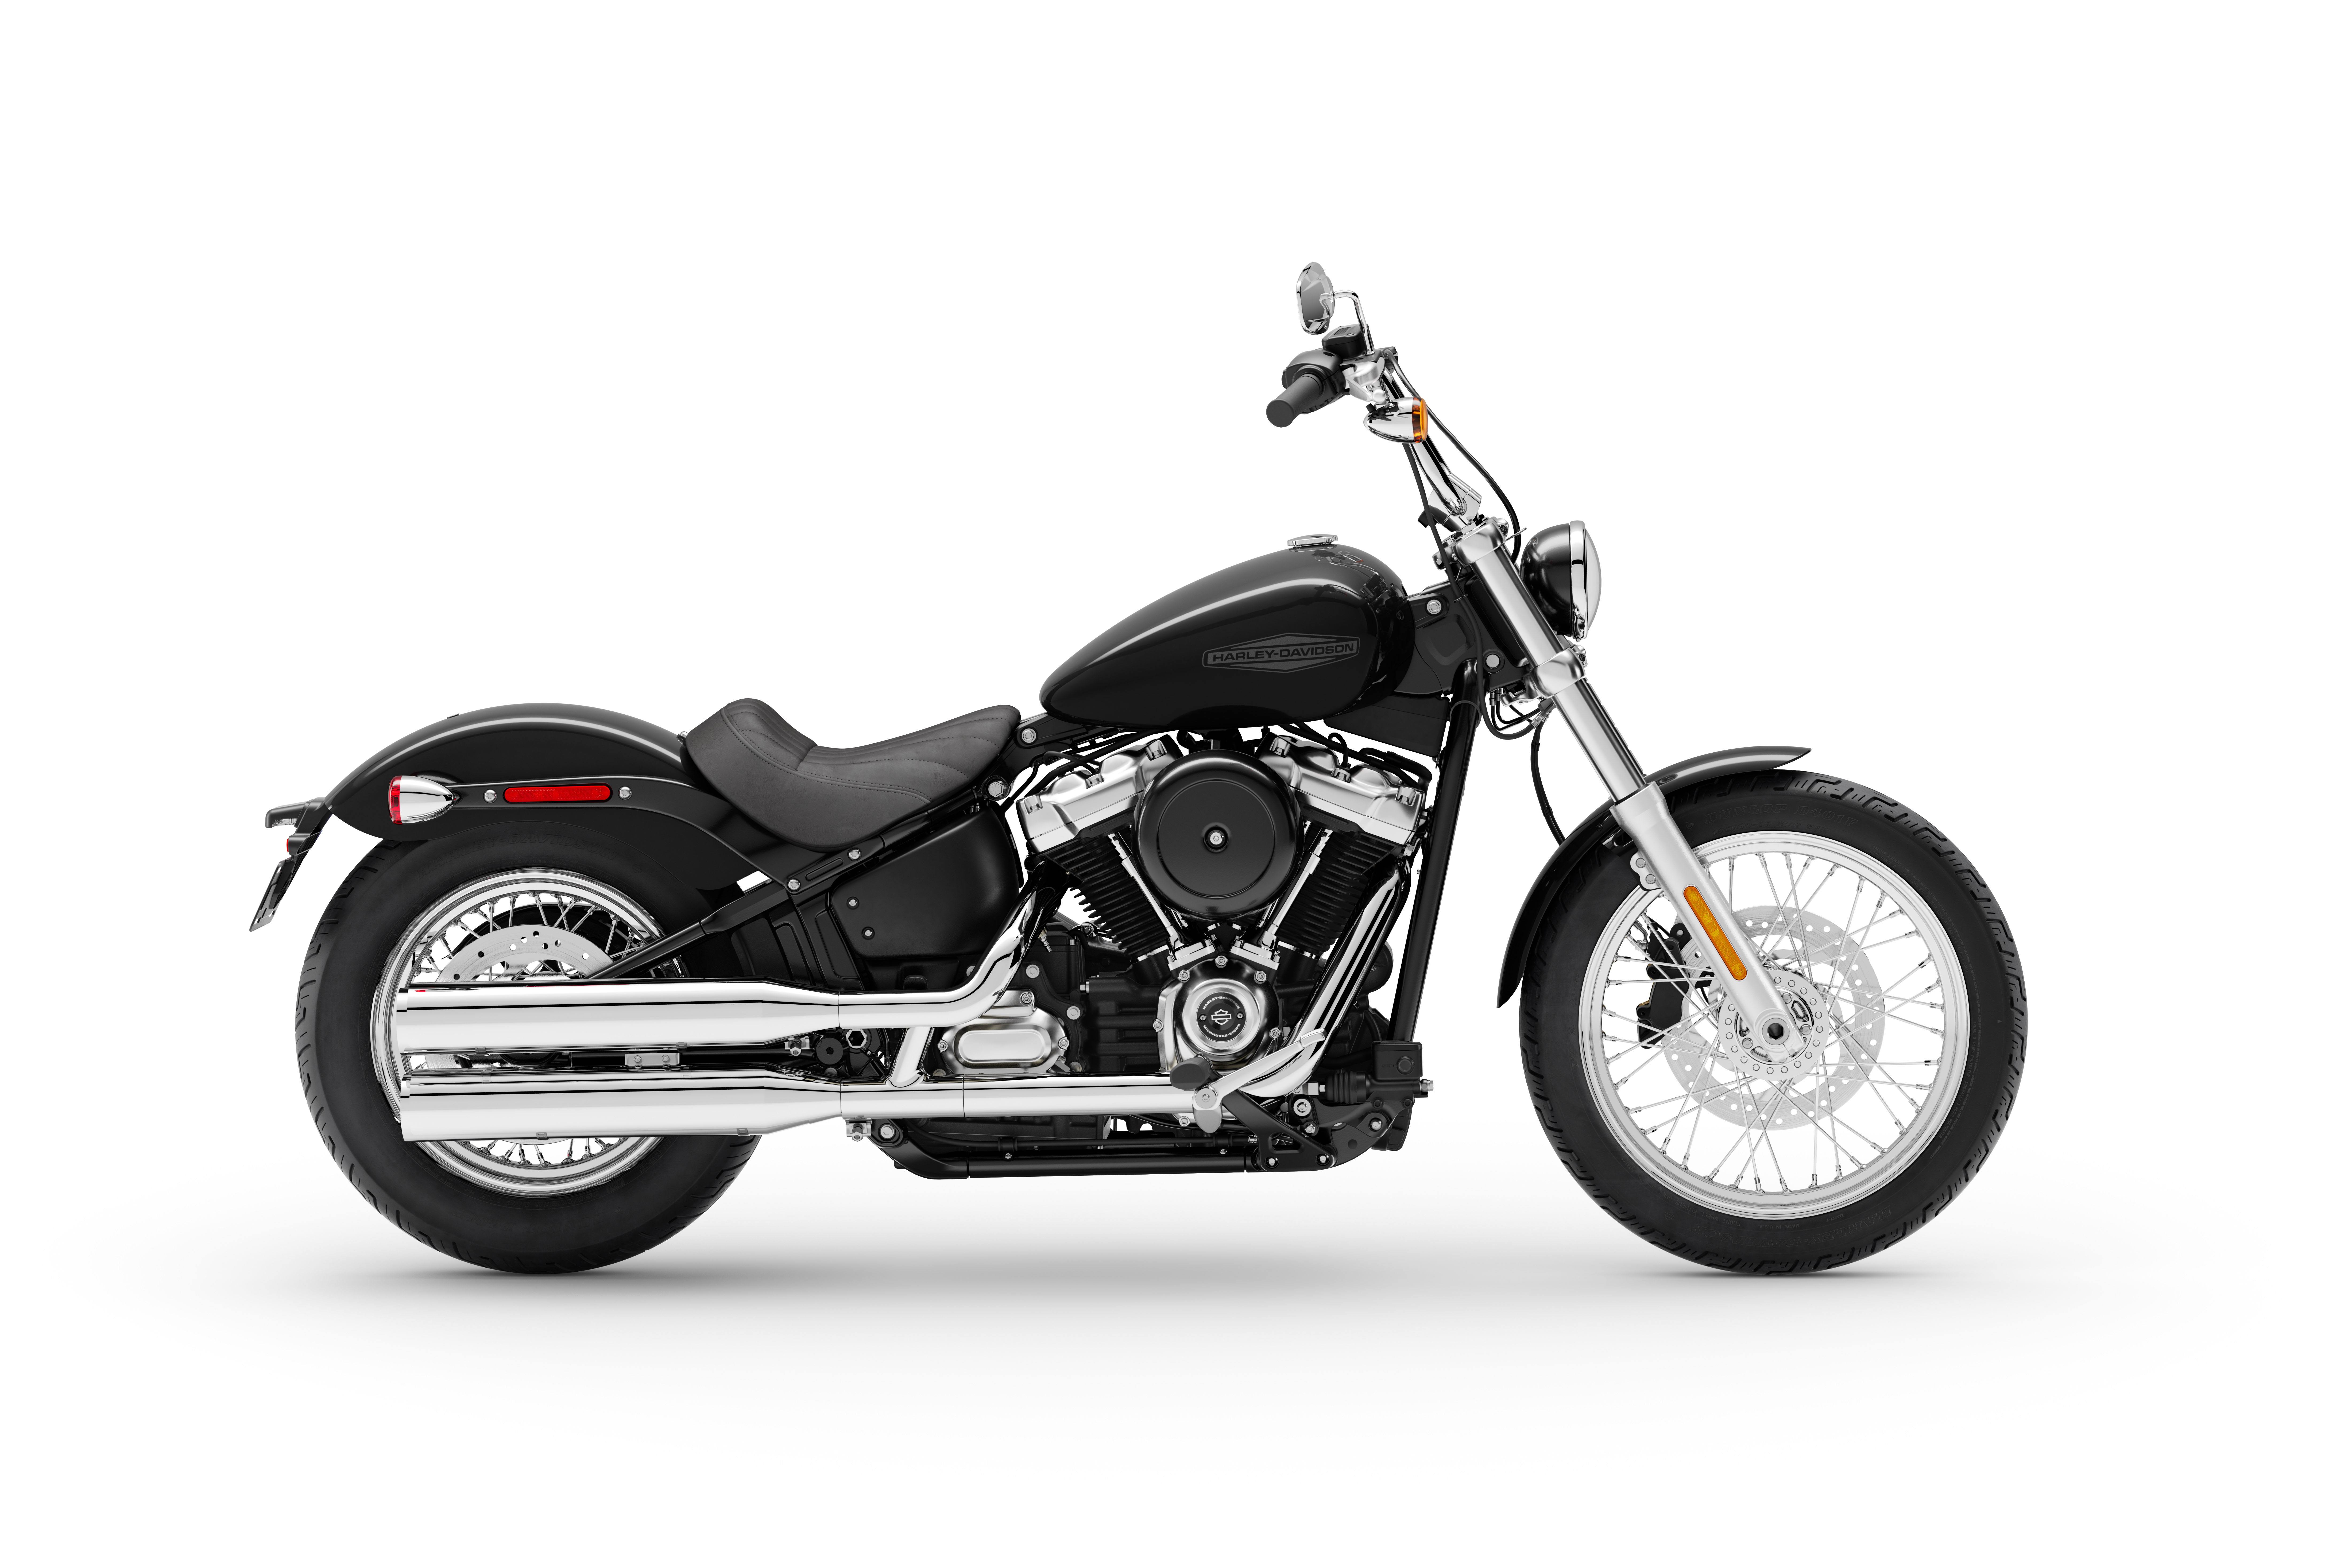 Images Of Harley Davidson Bike - KibrisPDR